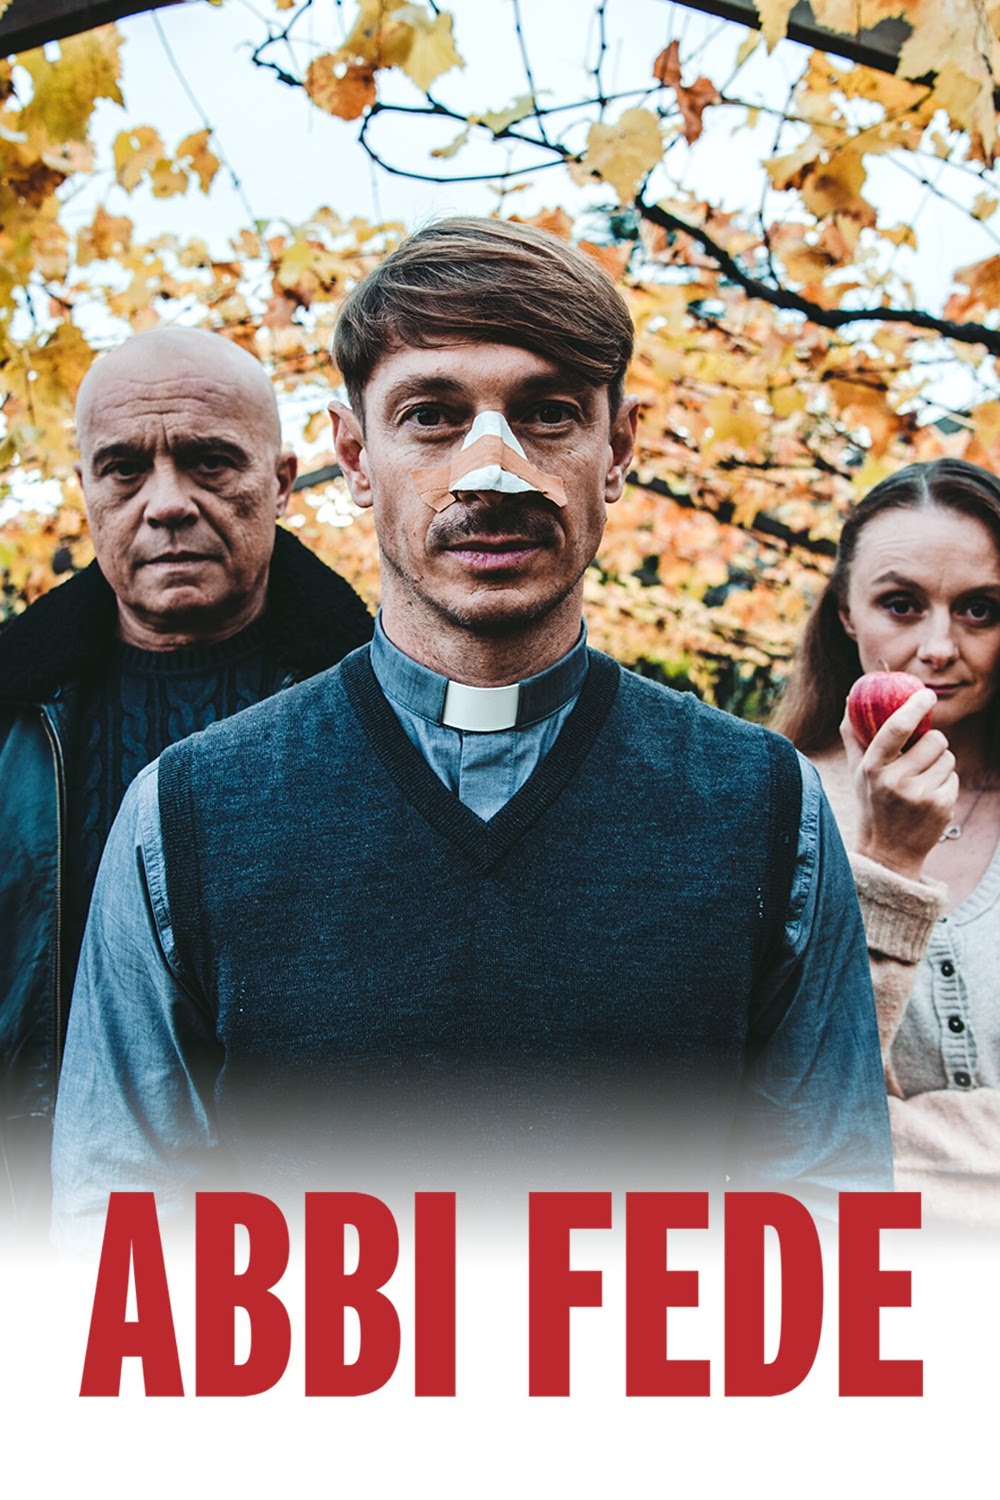 Abbi fede [HD] (2020)